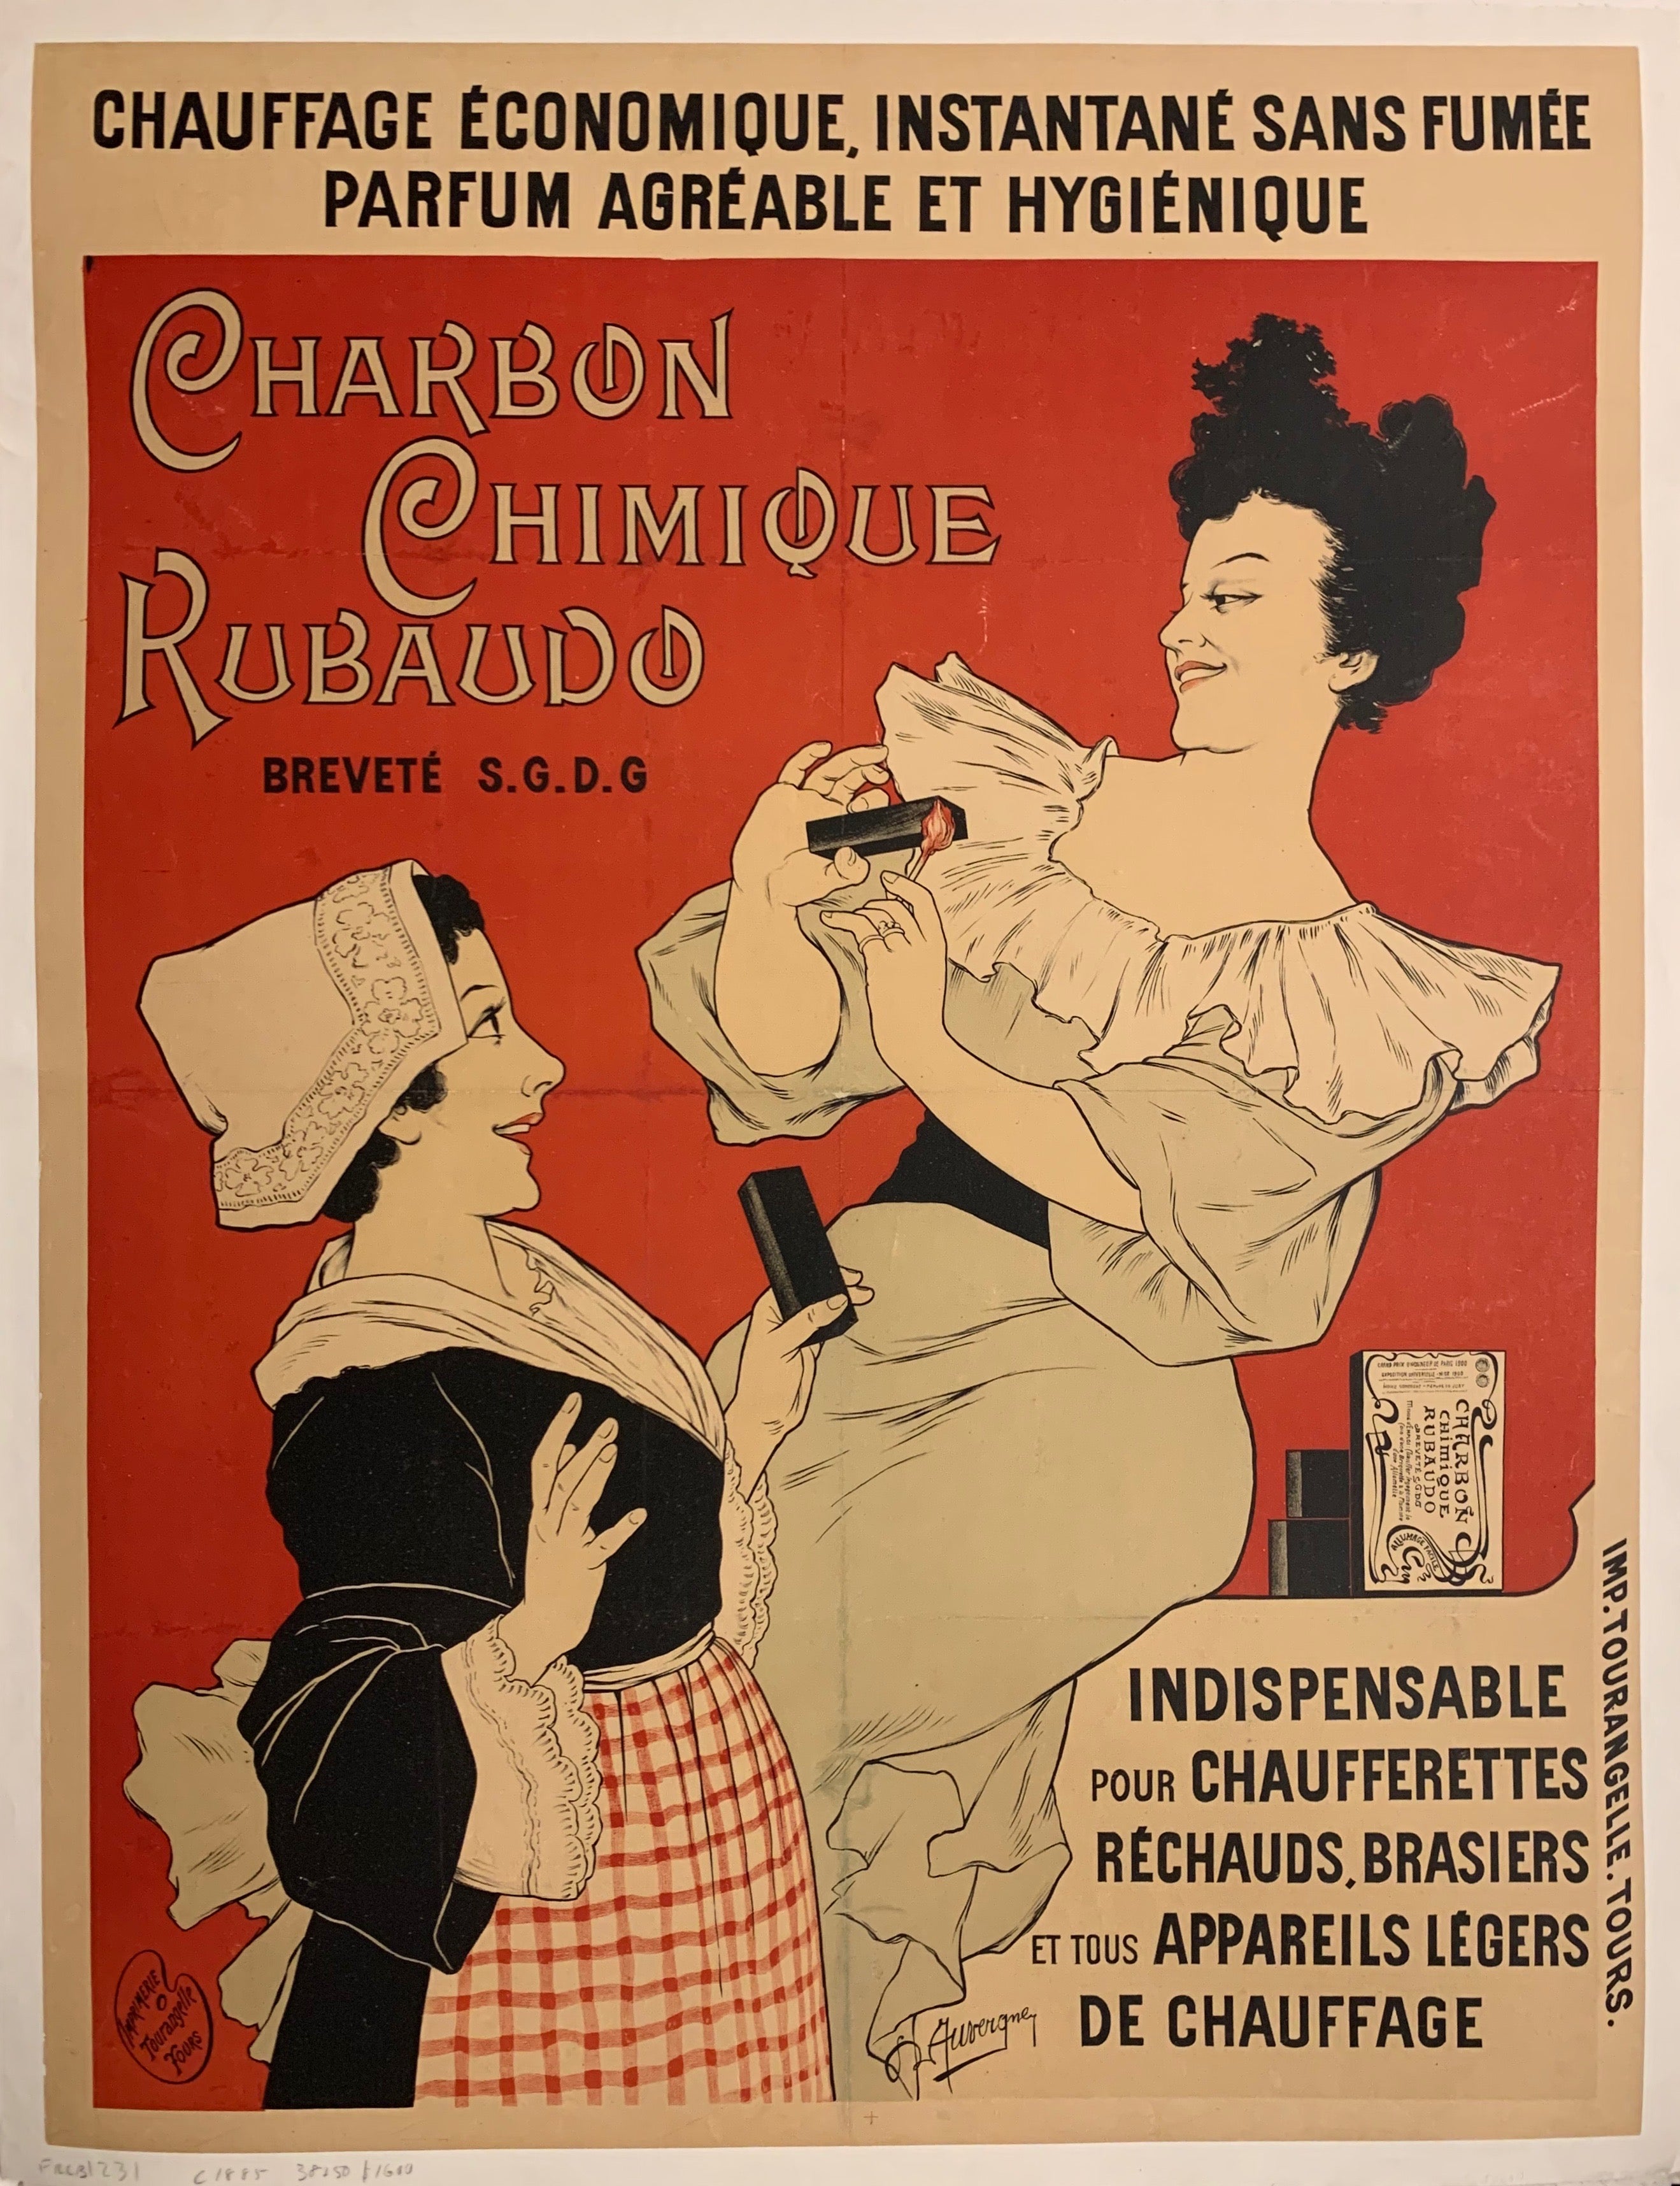 Charbon Chimique Rubaudo